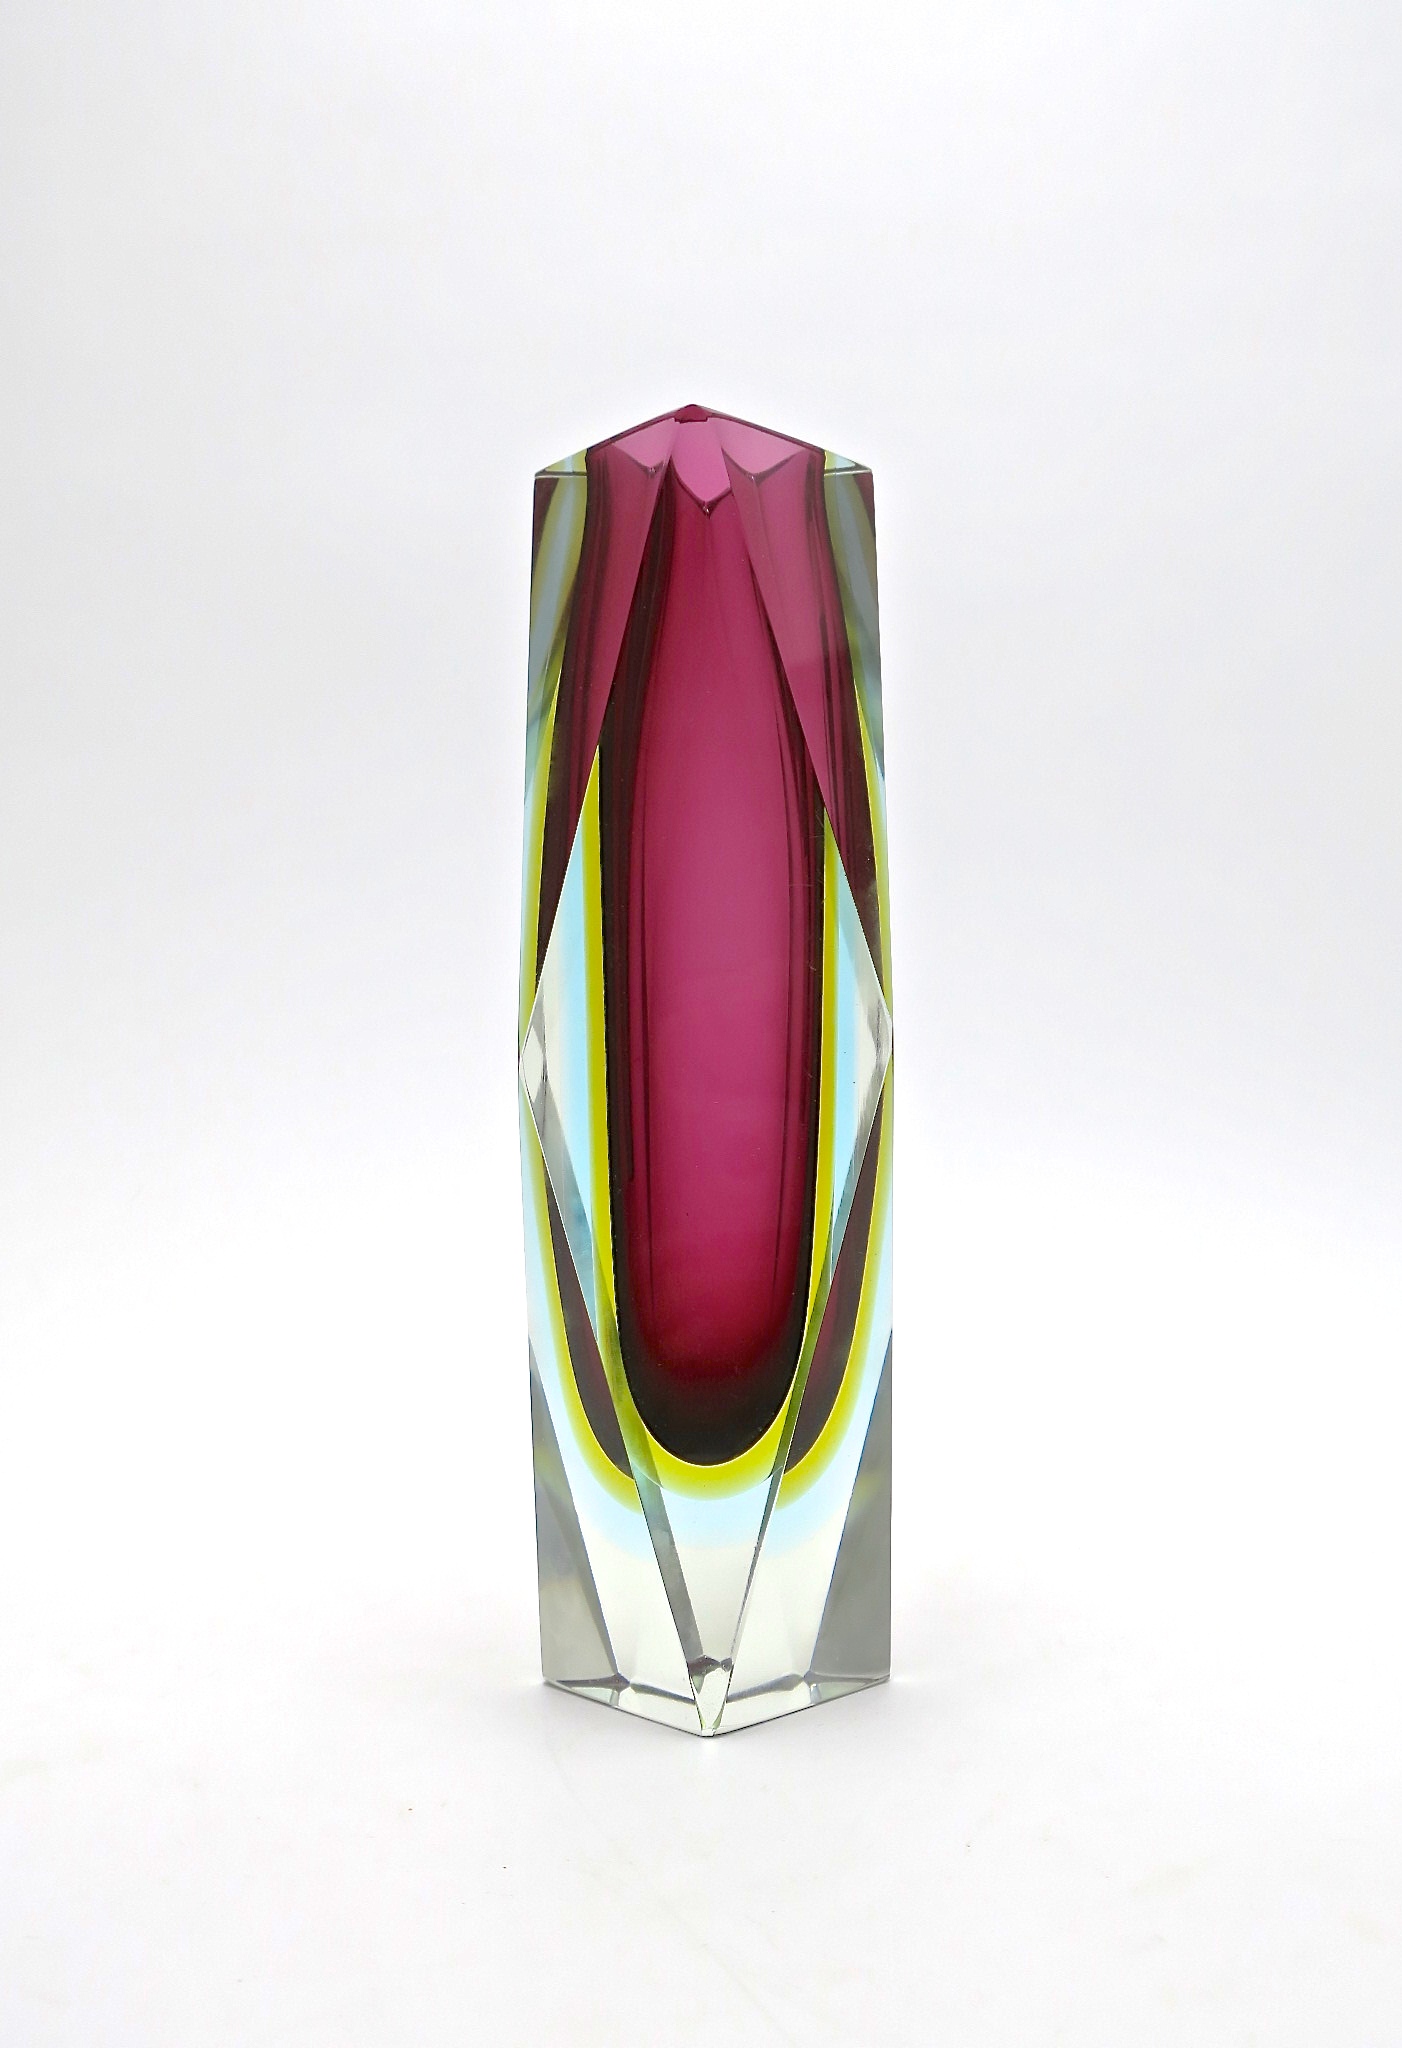 murano blockvase kristall mundgeblasen mouthblown handcrafted handgeschliffen feuerpoliert fire polished kristal crystal vase